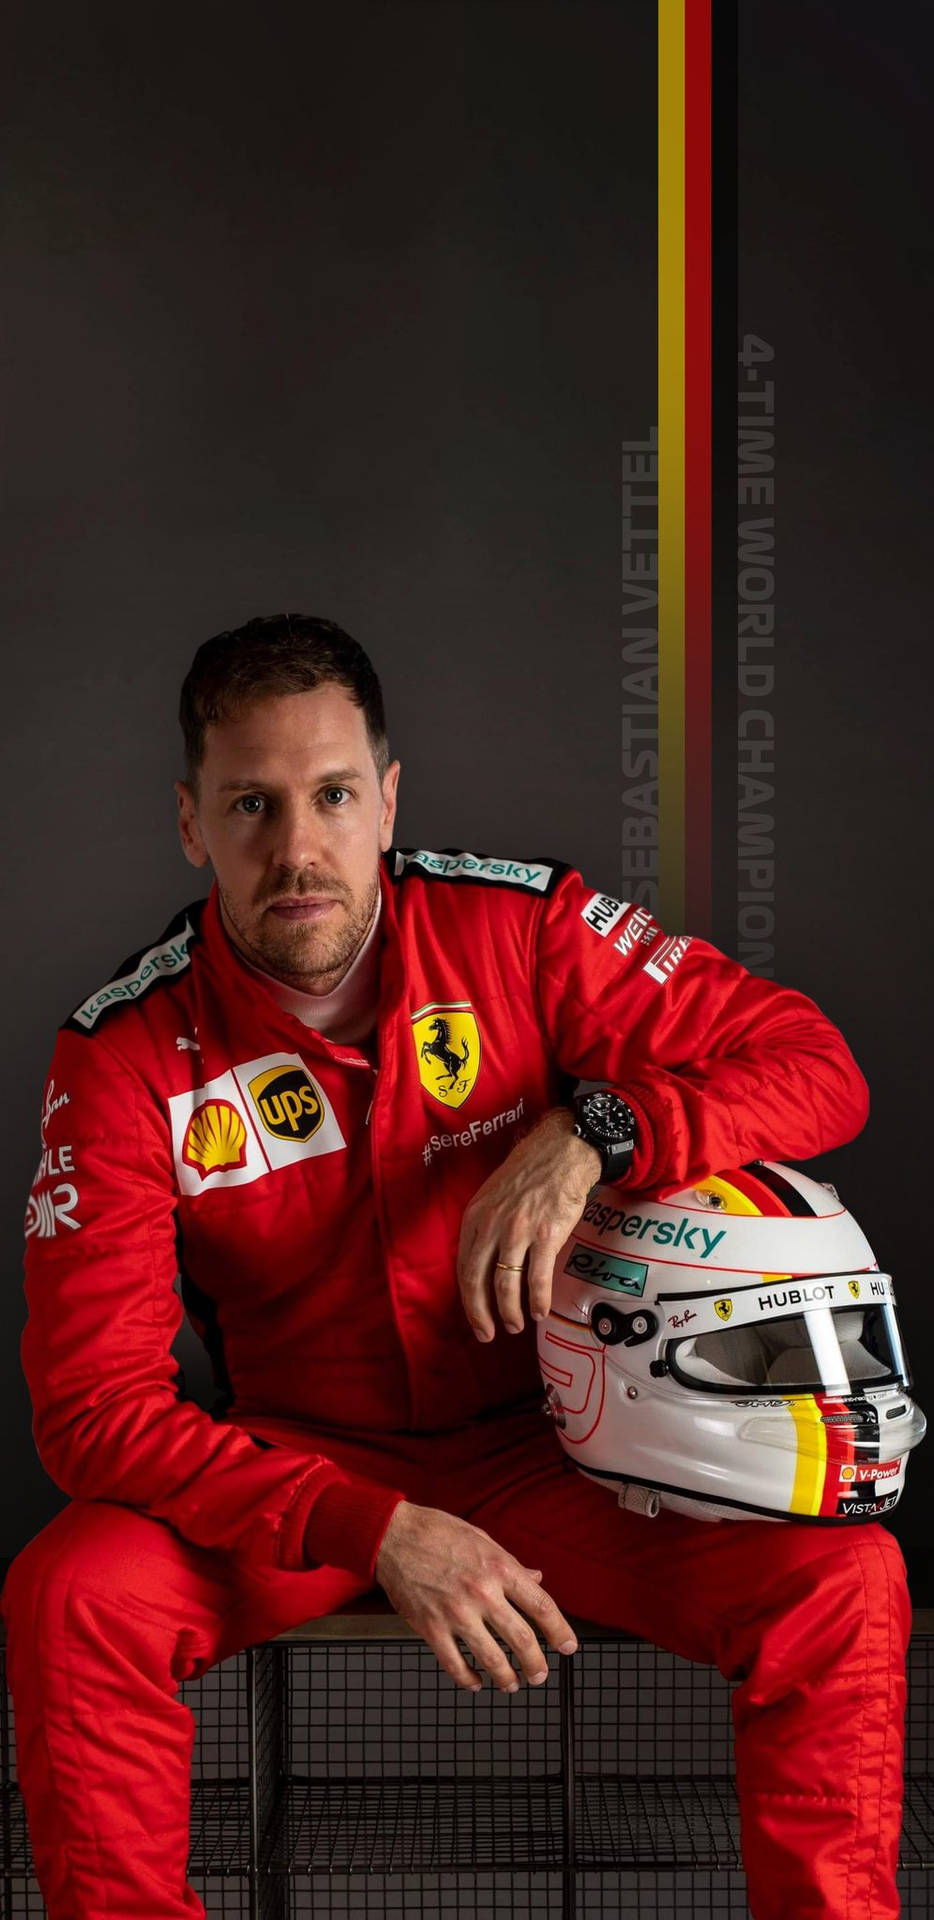 Sebastian Vettel Leaning On His Helmet Background